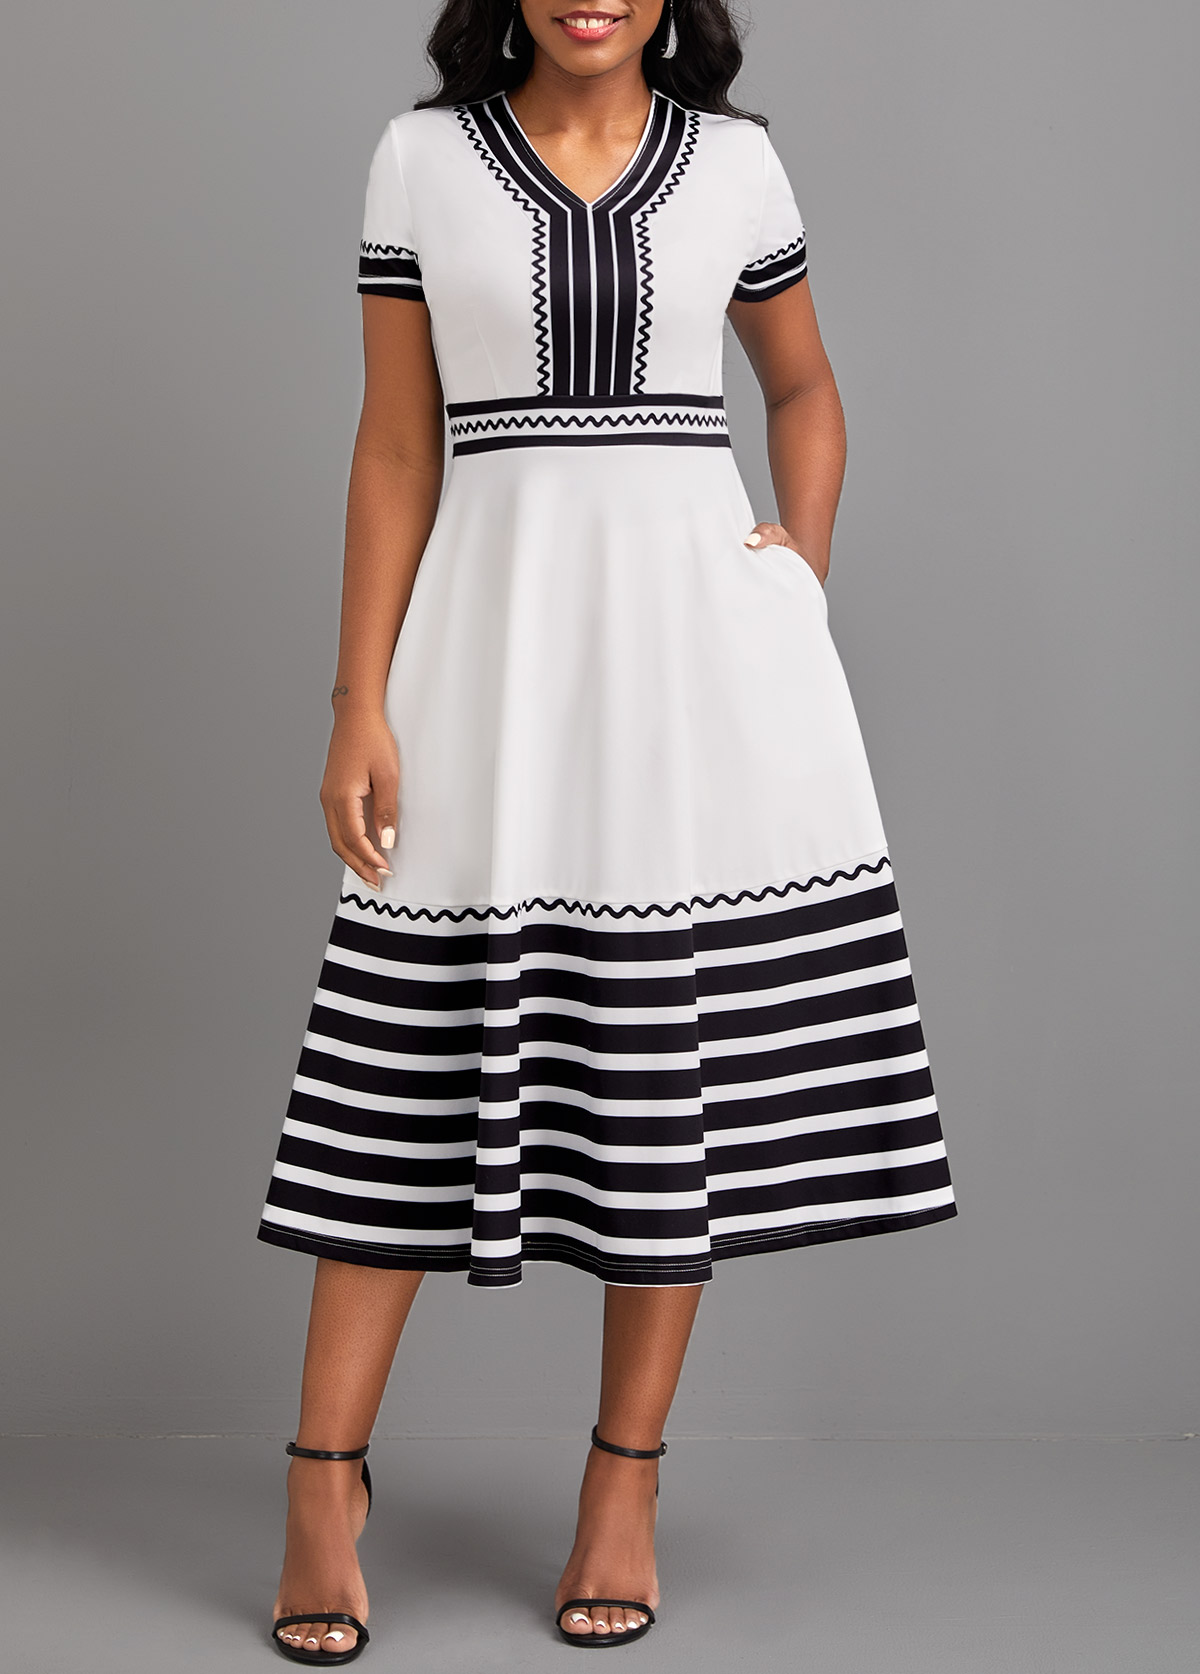 ROTITA Patchwork Striped White V Neck Short Sleeve Dress